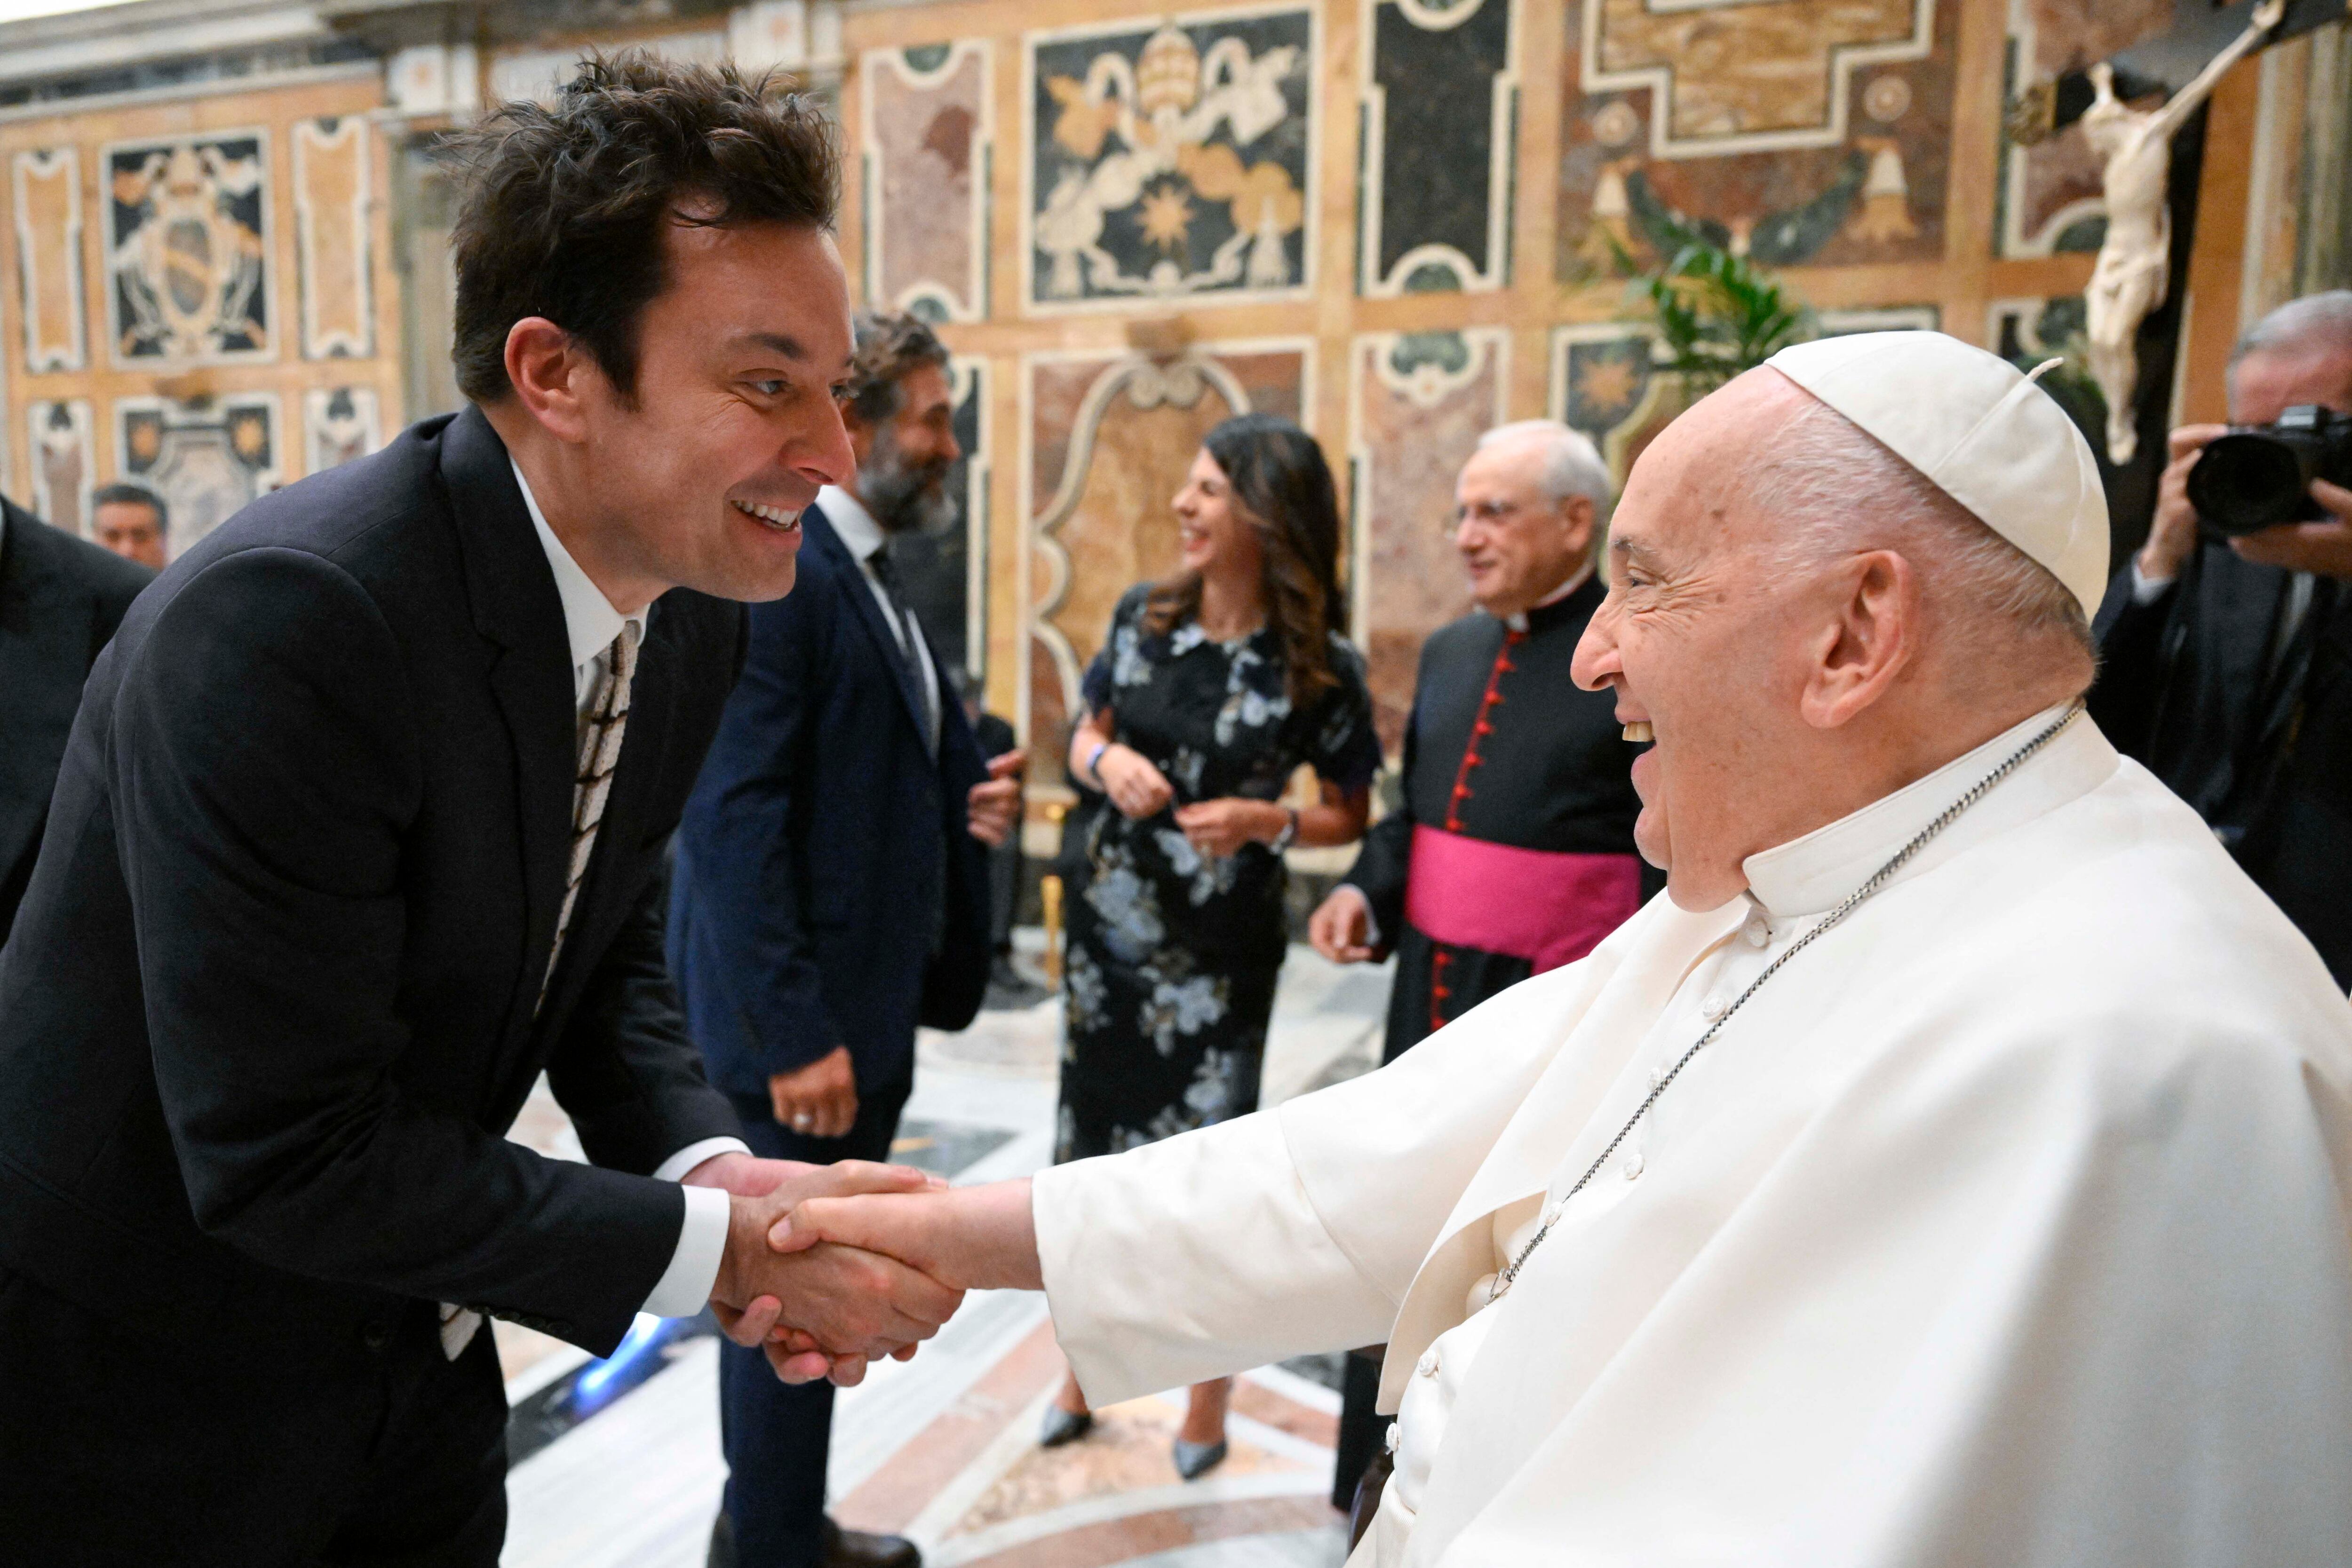 Jimmy Fallon, humorista y conductor del programa de televisión 'The Tonight Show', fue uno de los 100 comediantes bromeó y saludó personalmente al papa Francisco.